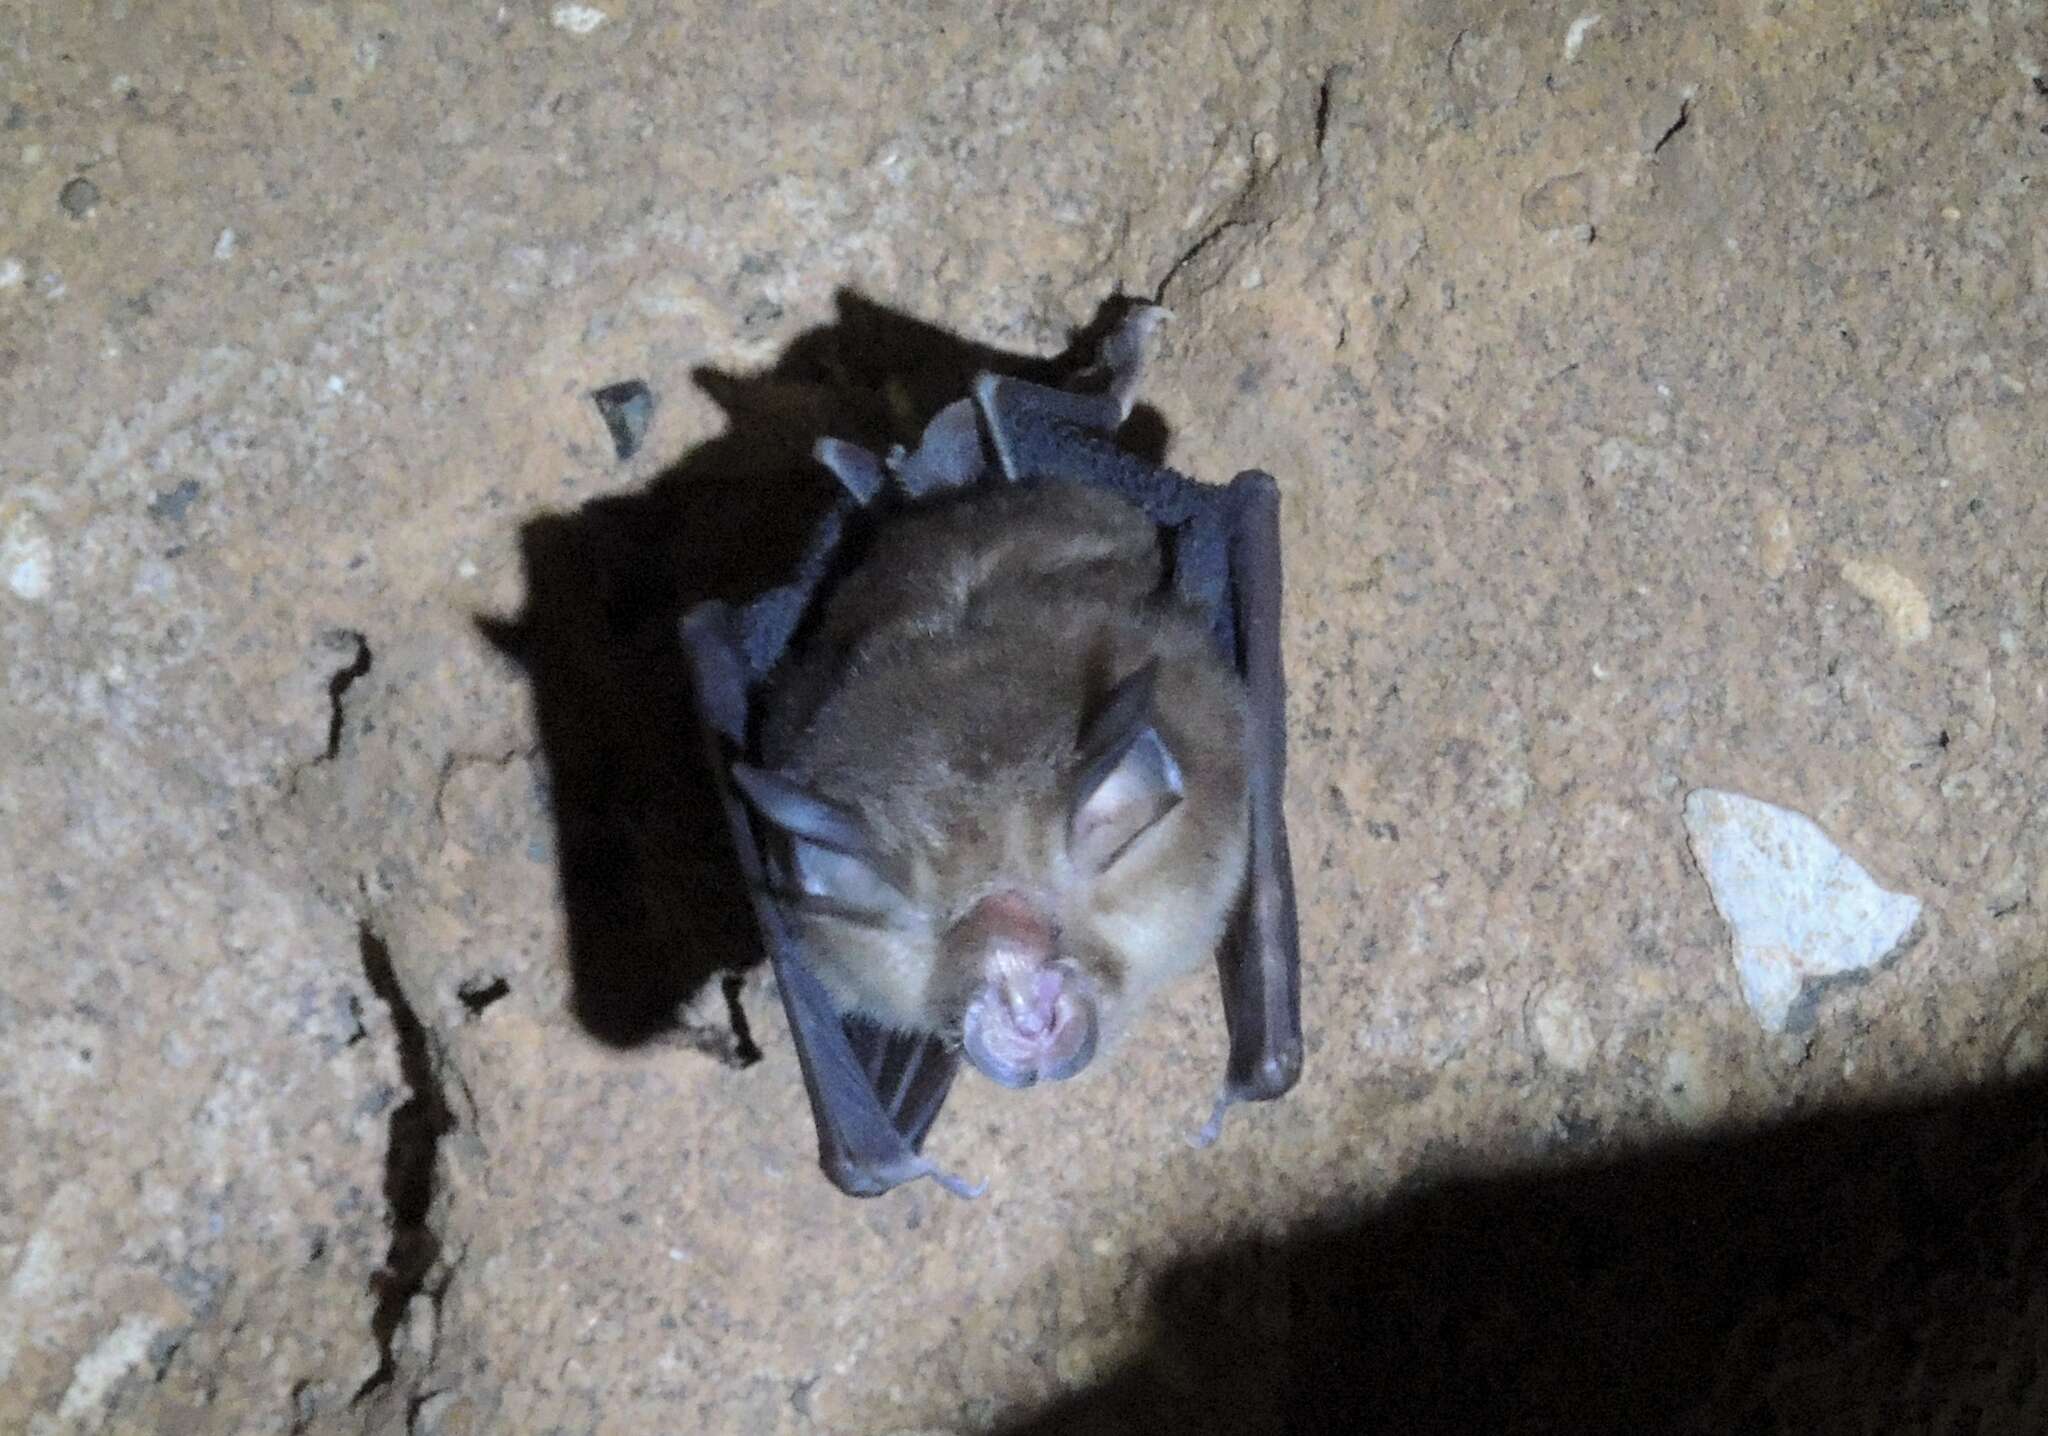 Image of Croslet Horseshoe Bat